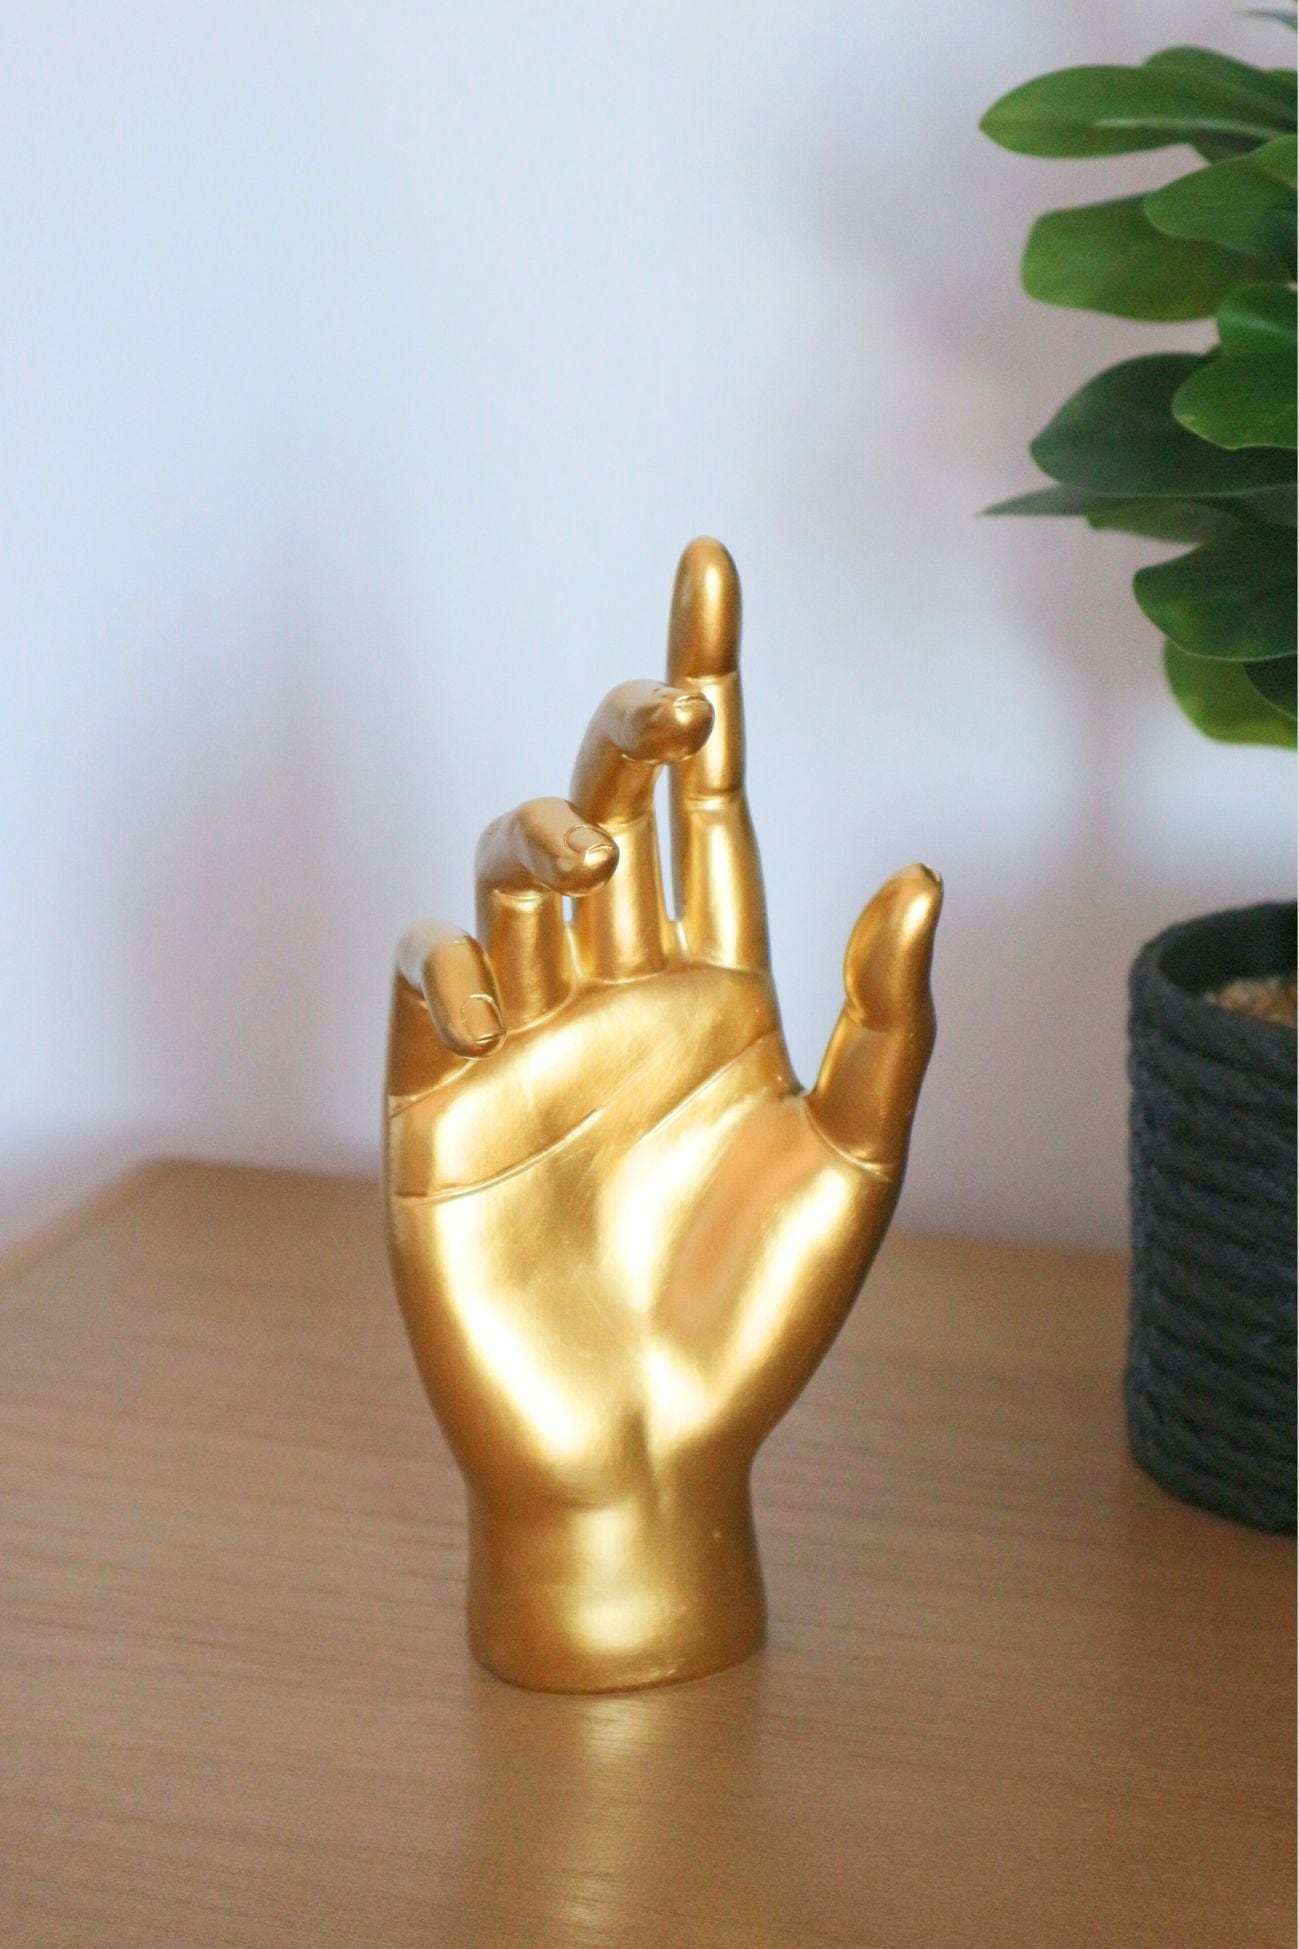 Item International Dagan Dagan - Decorazione in resina a forma di mano dorata | Item International